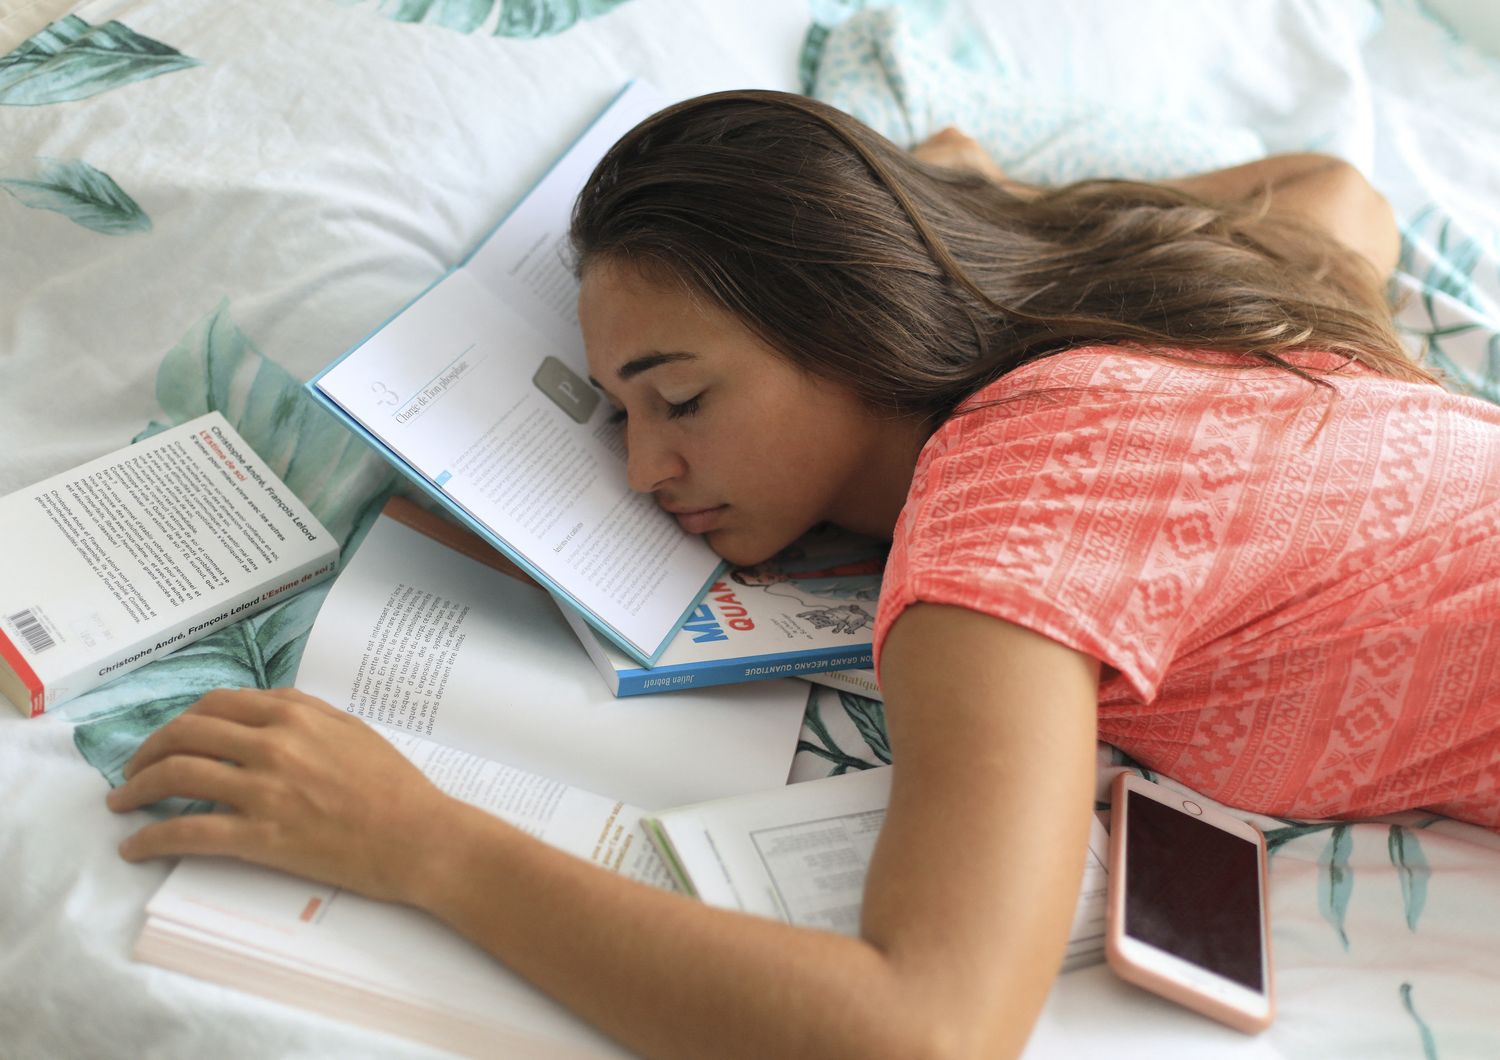 Una studentessa addormentata sui libri